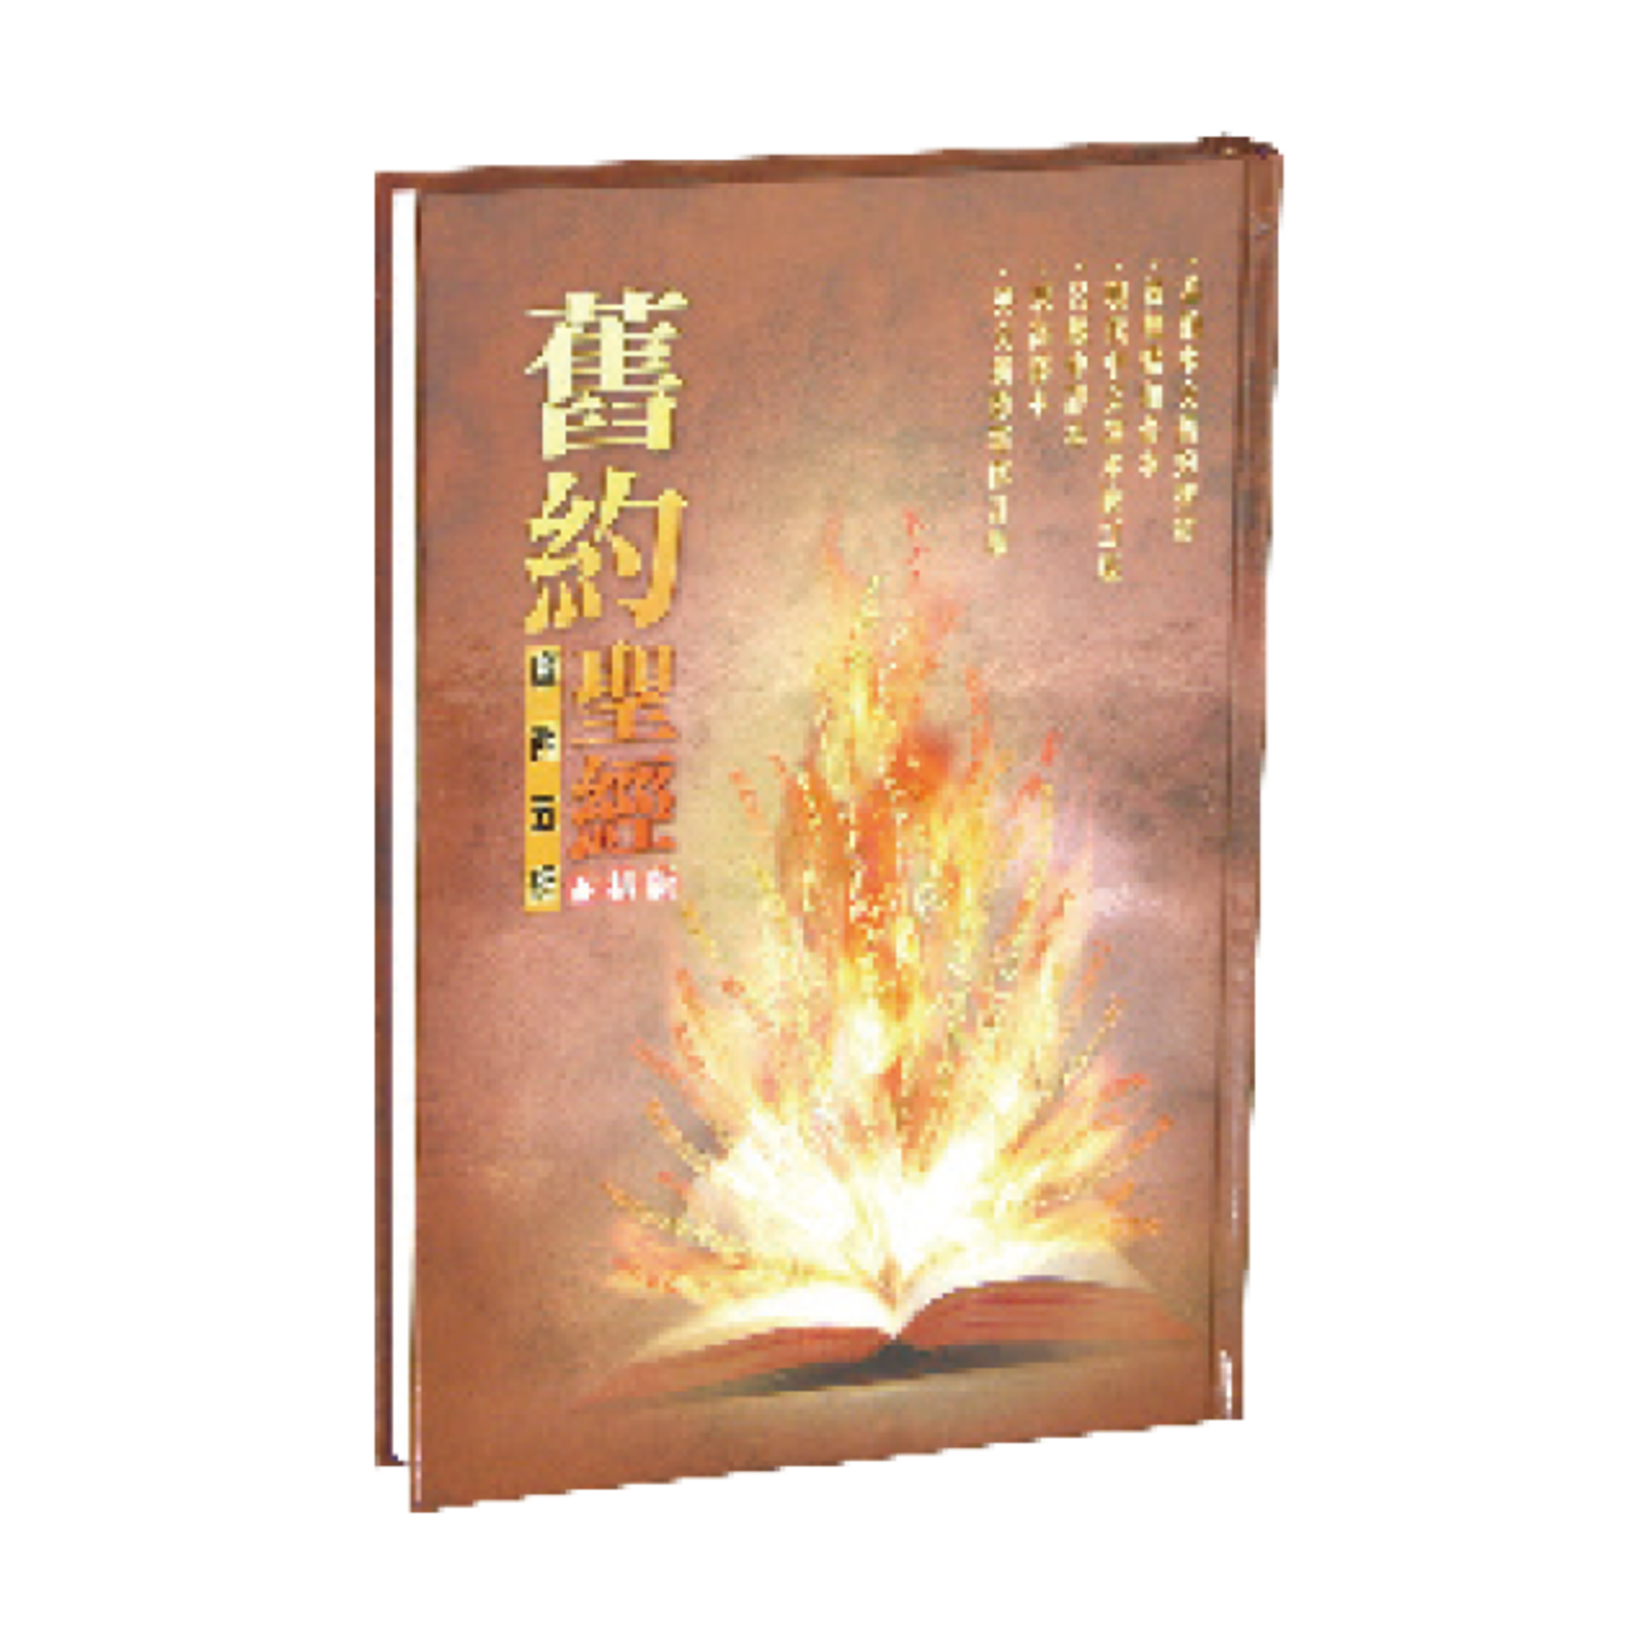 香港聖經公會 Hong Kong Bible Society 舊約聖經．摩西五經．六種版本並排版